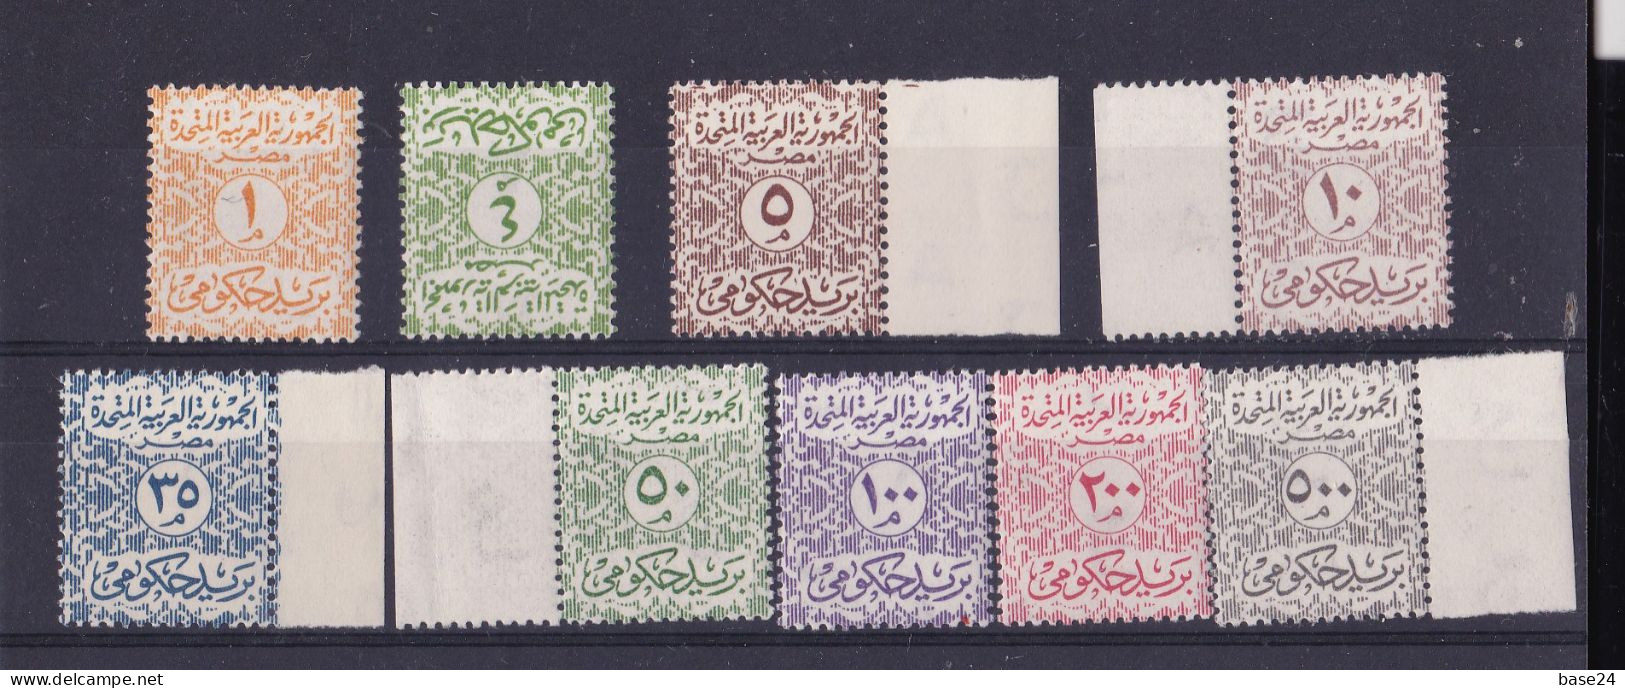 1962 Egitto Egypt UAR SERVIZI Serie Di 9 Valori MNH** OFFICIAL - Oficiales